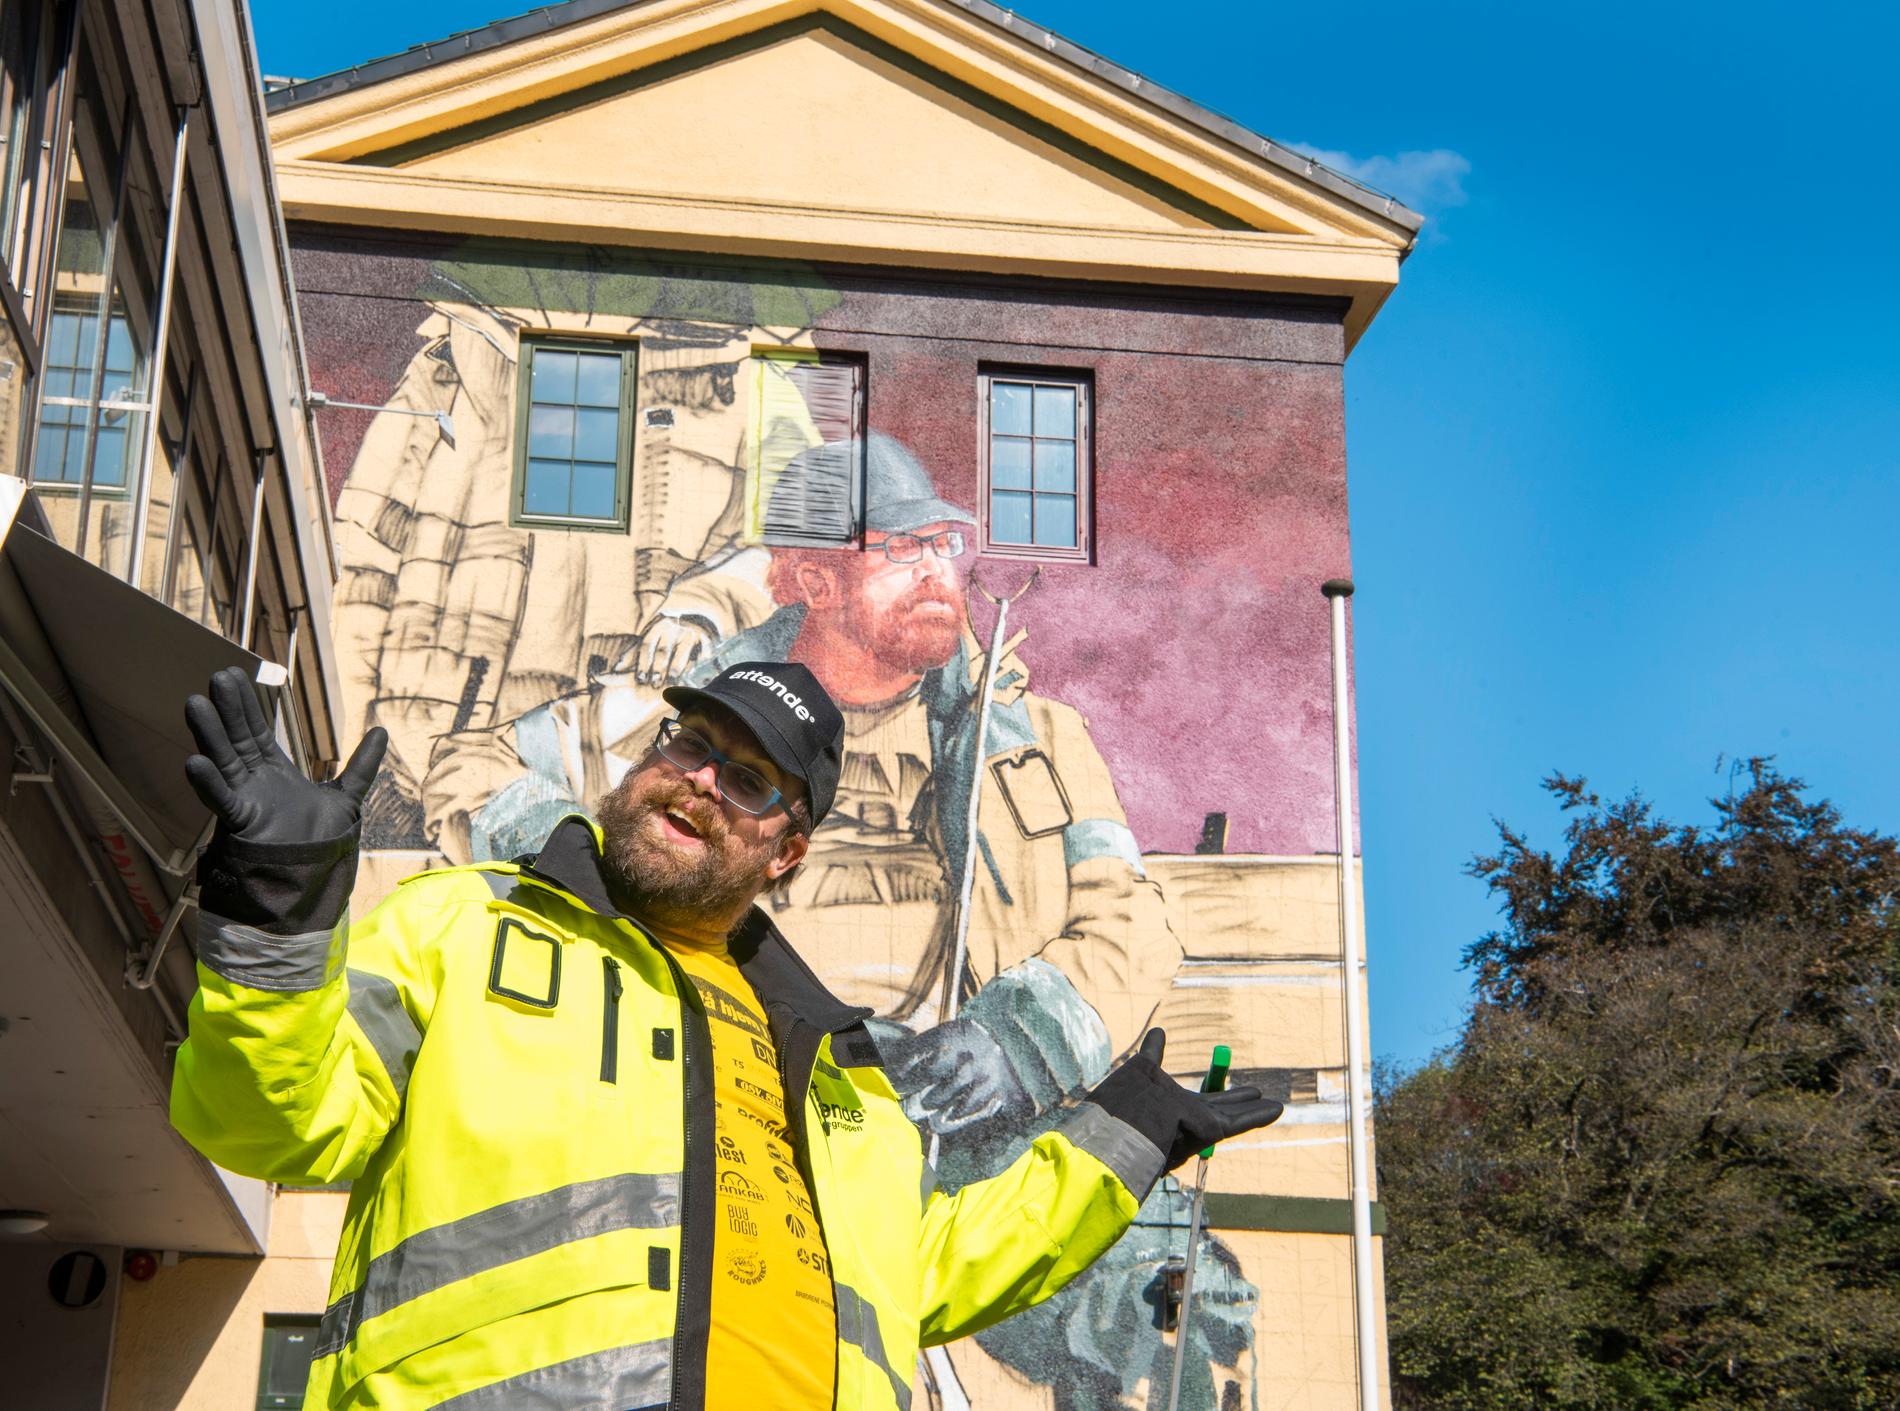 Gjengen i Ren by er ansatt i tiltaksbedriften Attende, og hvert år plukker de over 2300 kilo søppel fra byens gater. Nå blir Ingebrigt Valsvik Gjerde og kollegene hedret med et stort gatekunstmaleri i Løkkeveien i forbindelse med Nuart-festivalen.